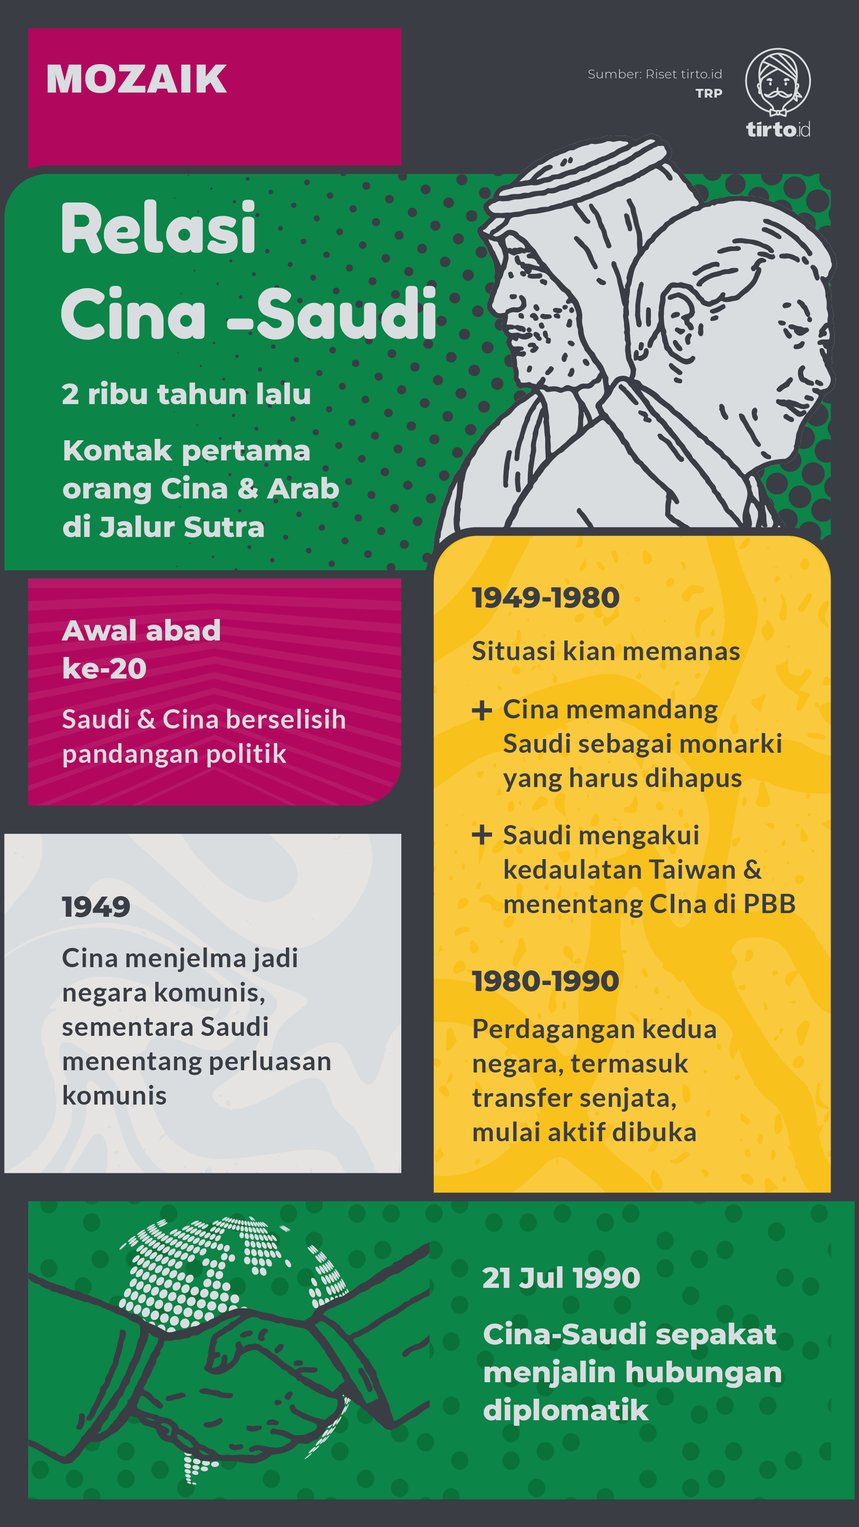 Infografik Mozaik Relasi Cina-Saudi